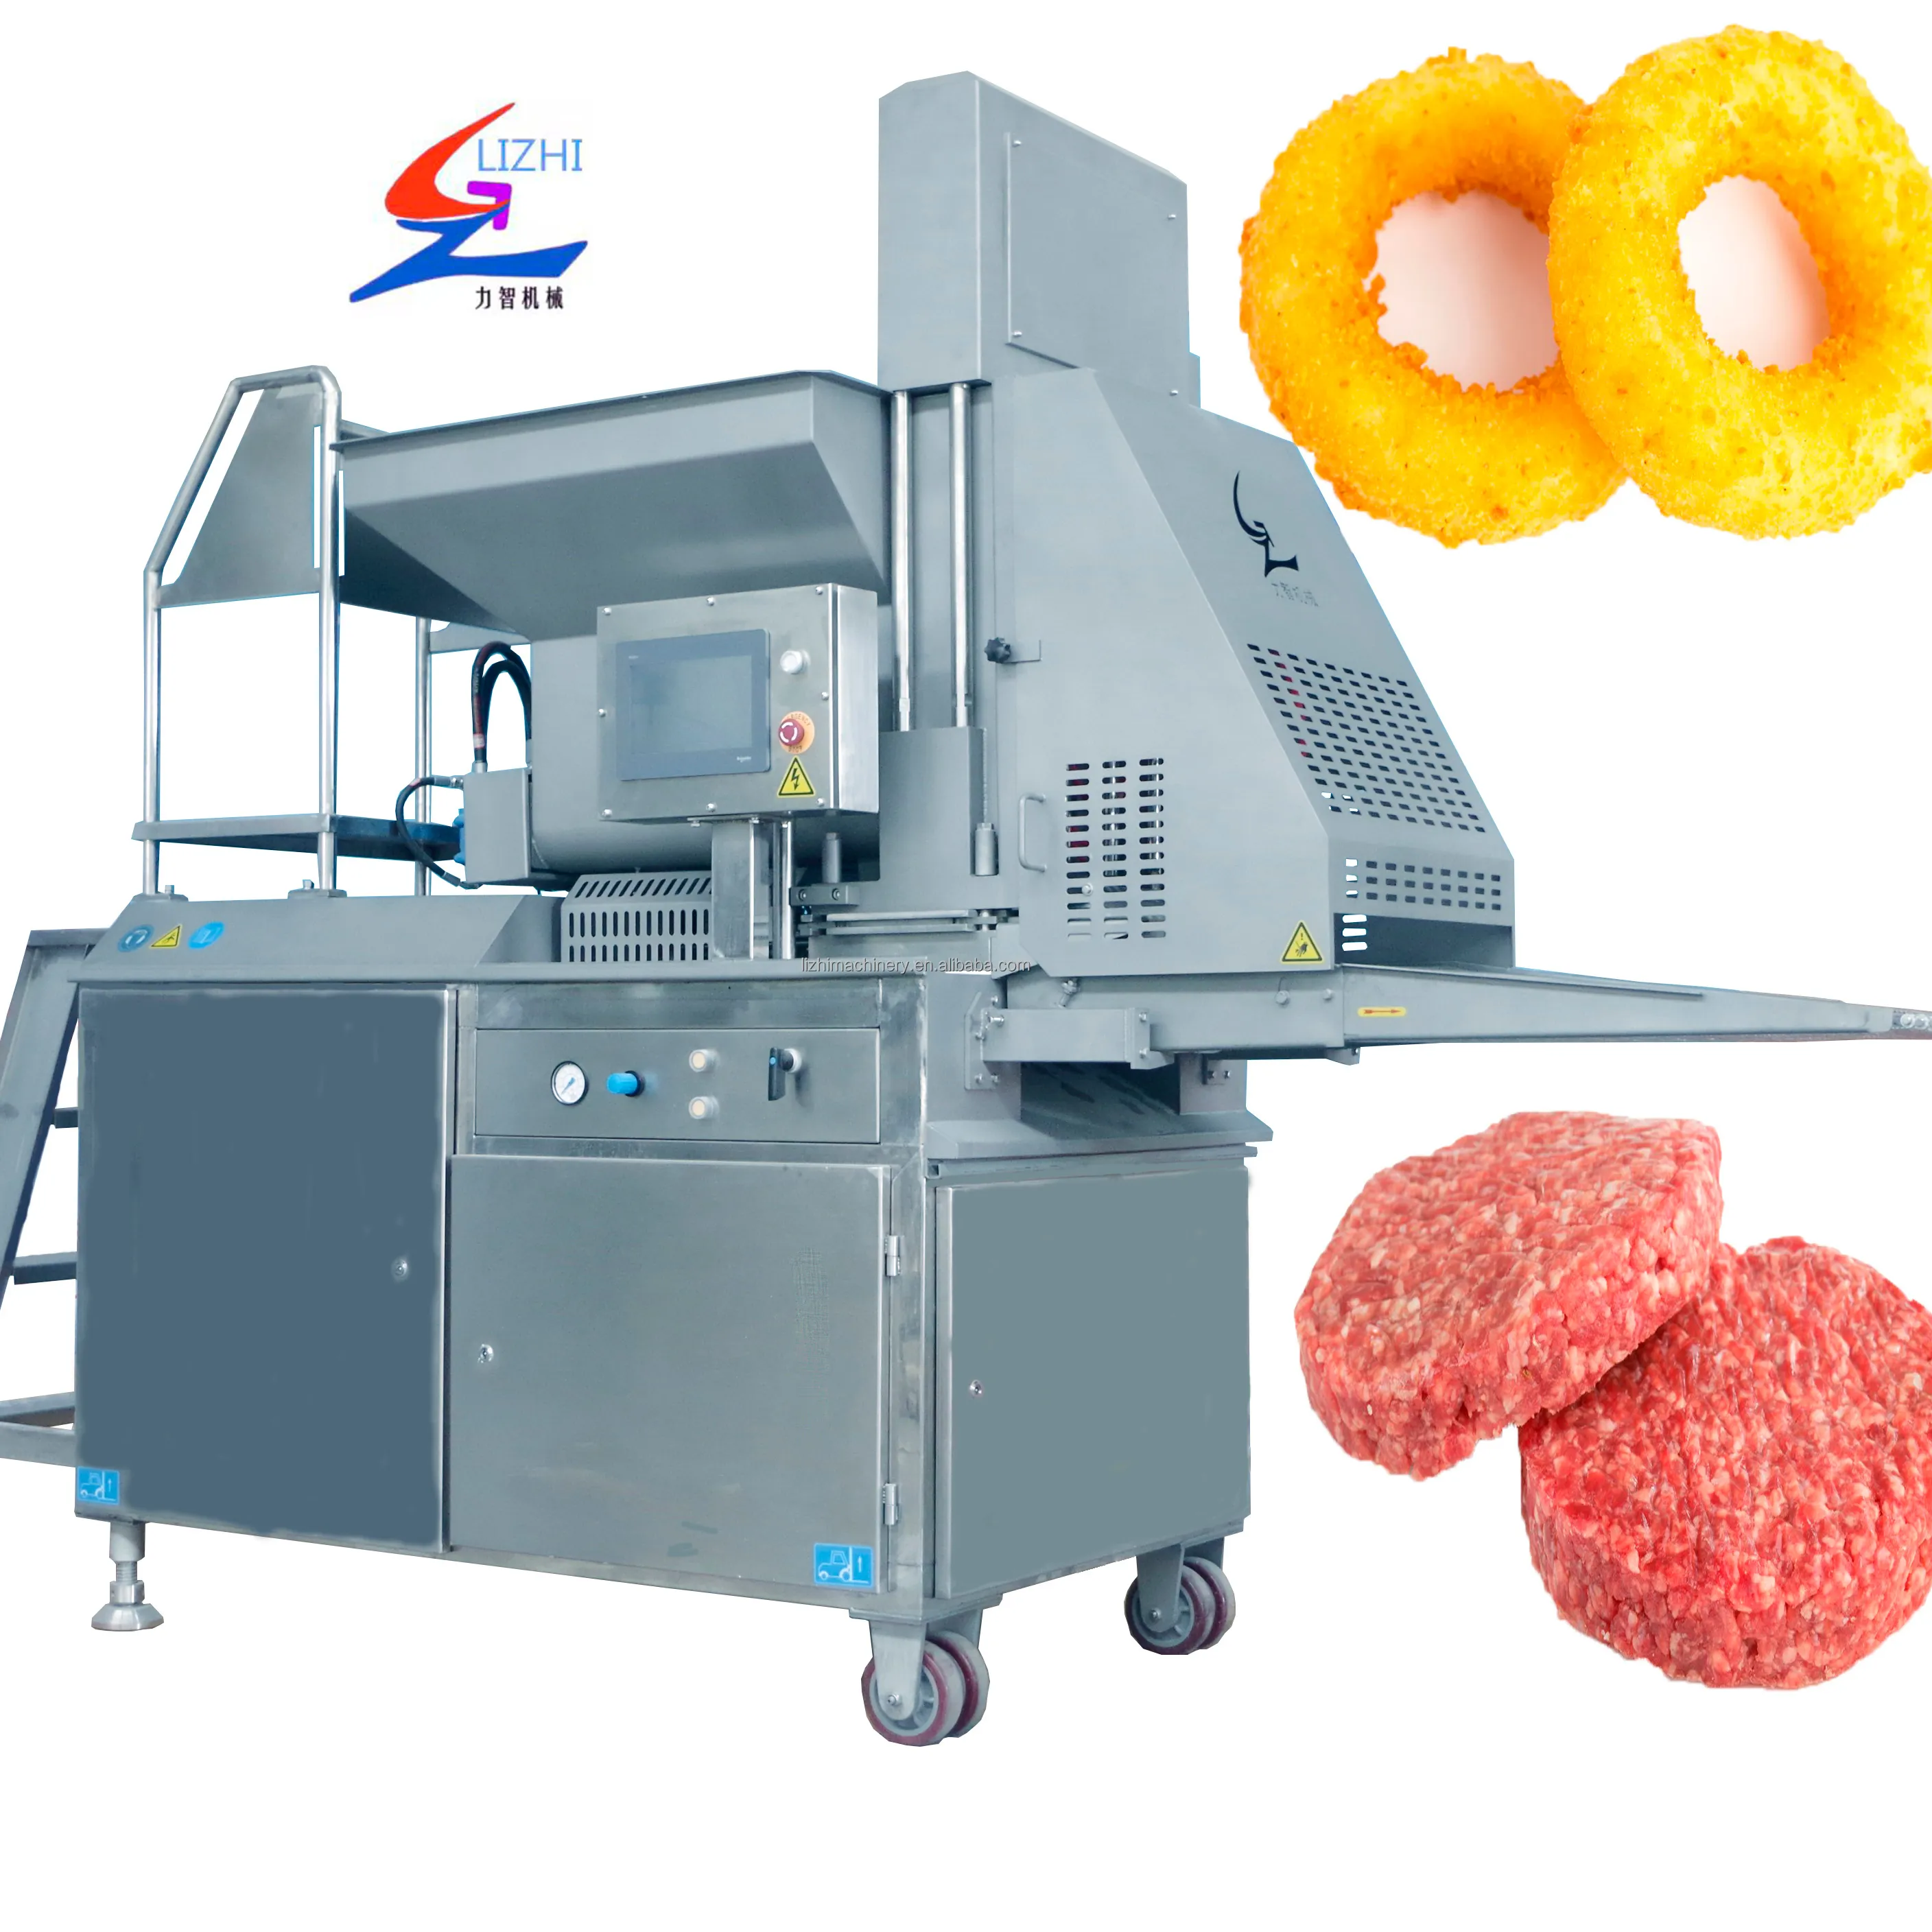 Maquinaria para hacer hamburguesas, máquina de moldeo automático para carne, hamburguesas y hamburguesas